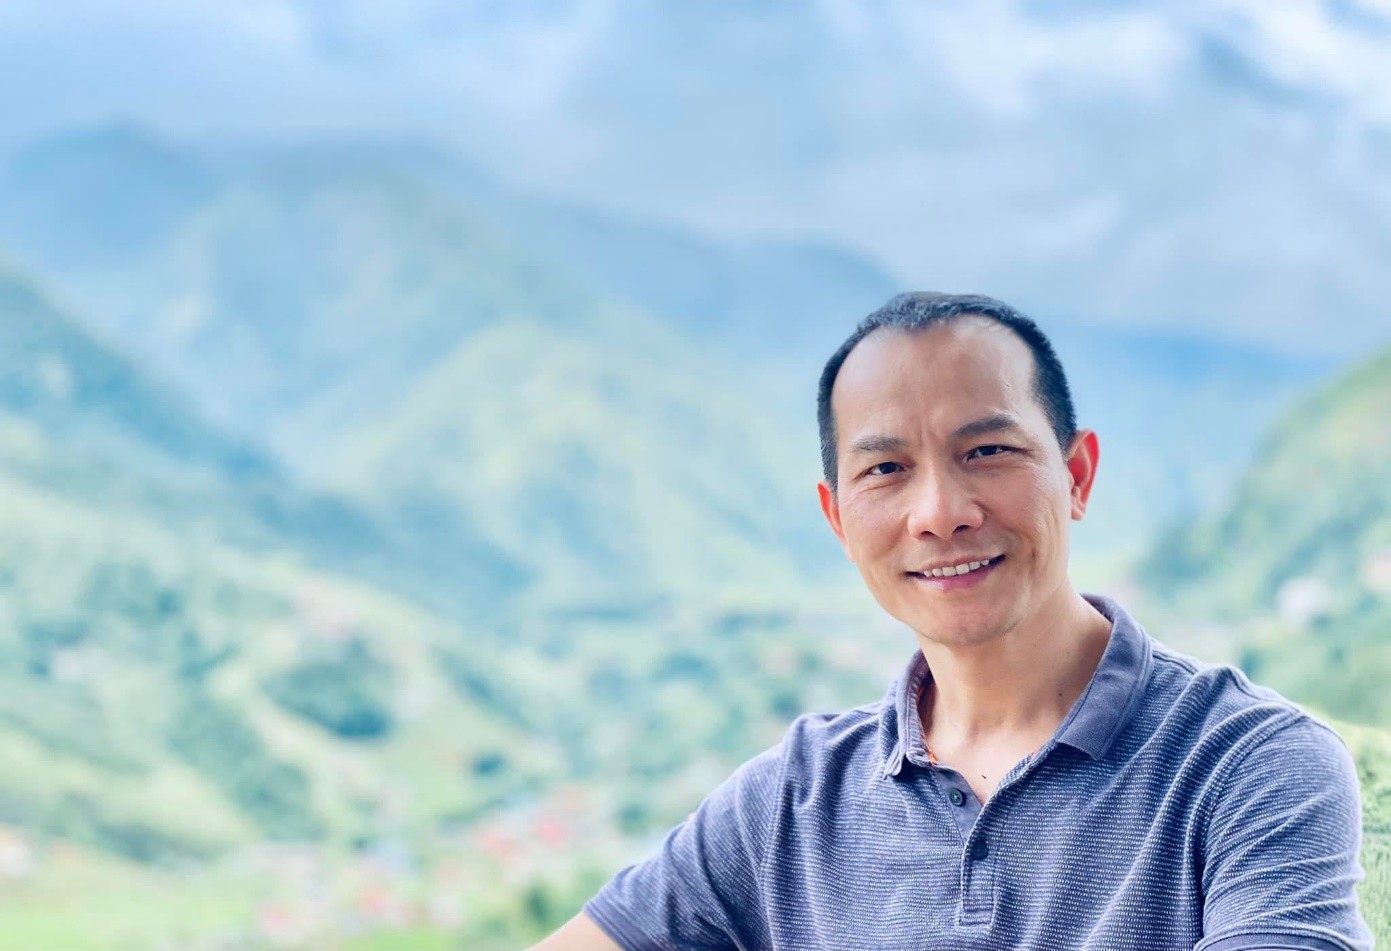 Coach Nguyễn Xuân Hương và hành trình định hướng tương lai cho thế hệ trẻ, doanh nghiệp phát triển - Ảnh 1.